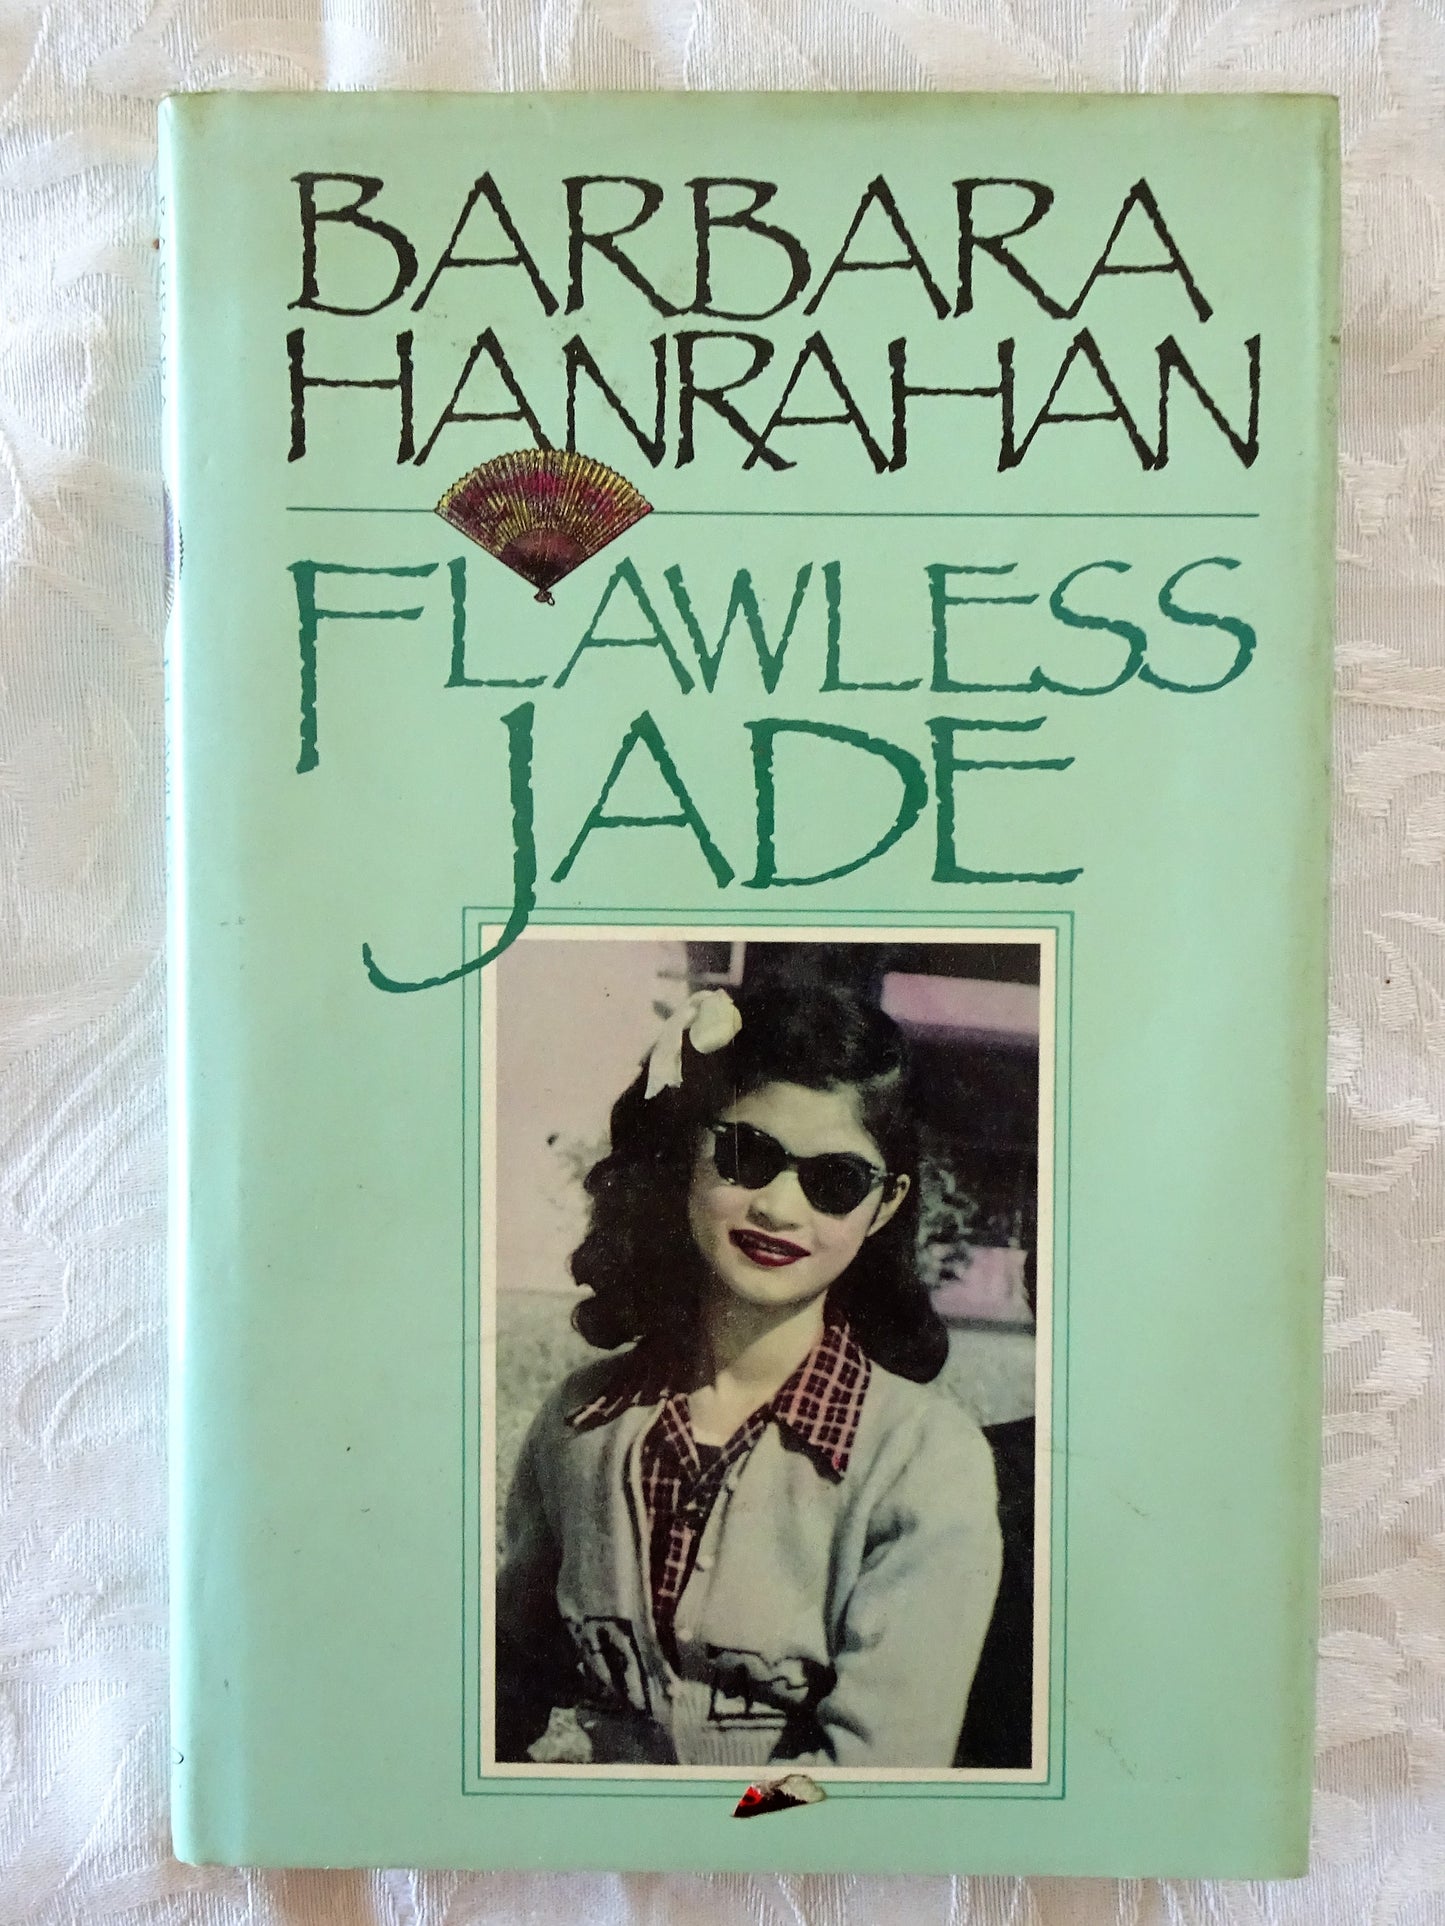 Flawless Jade by Barbara Hanrahan